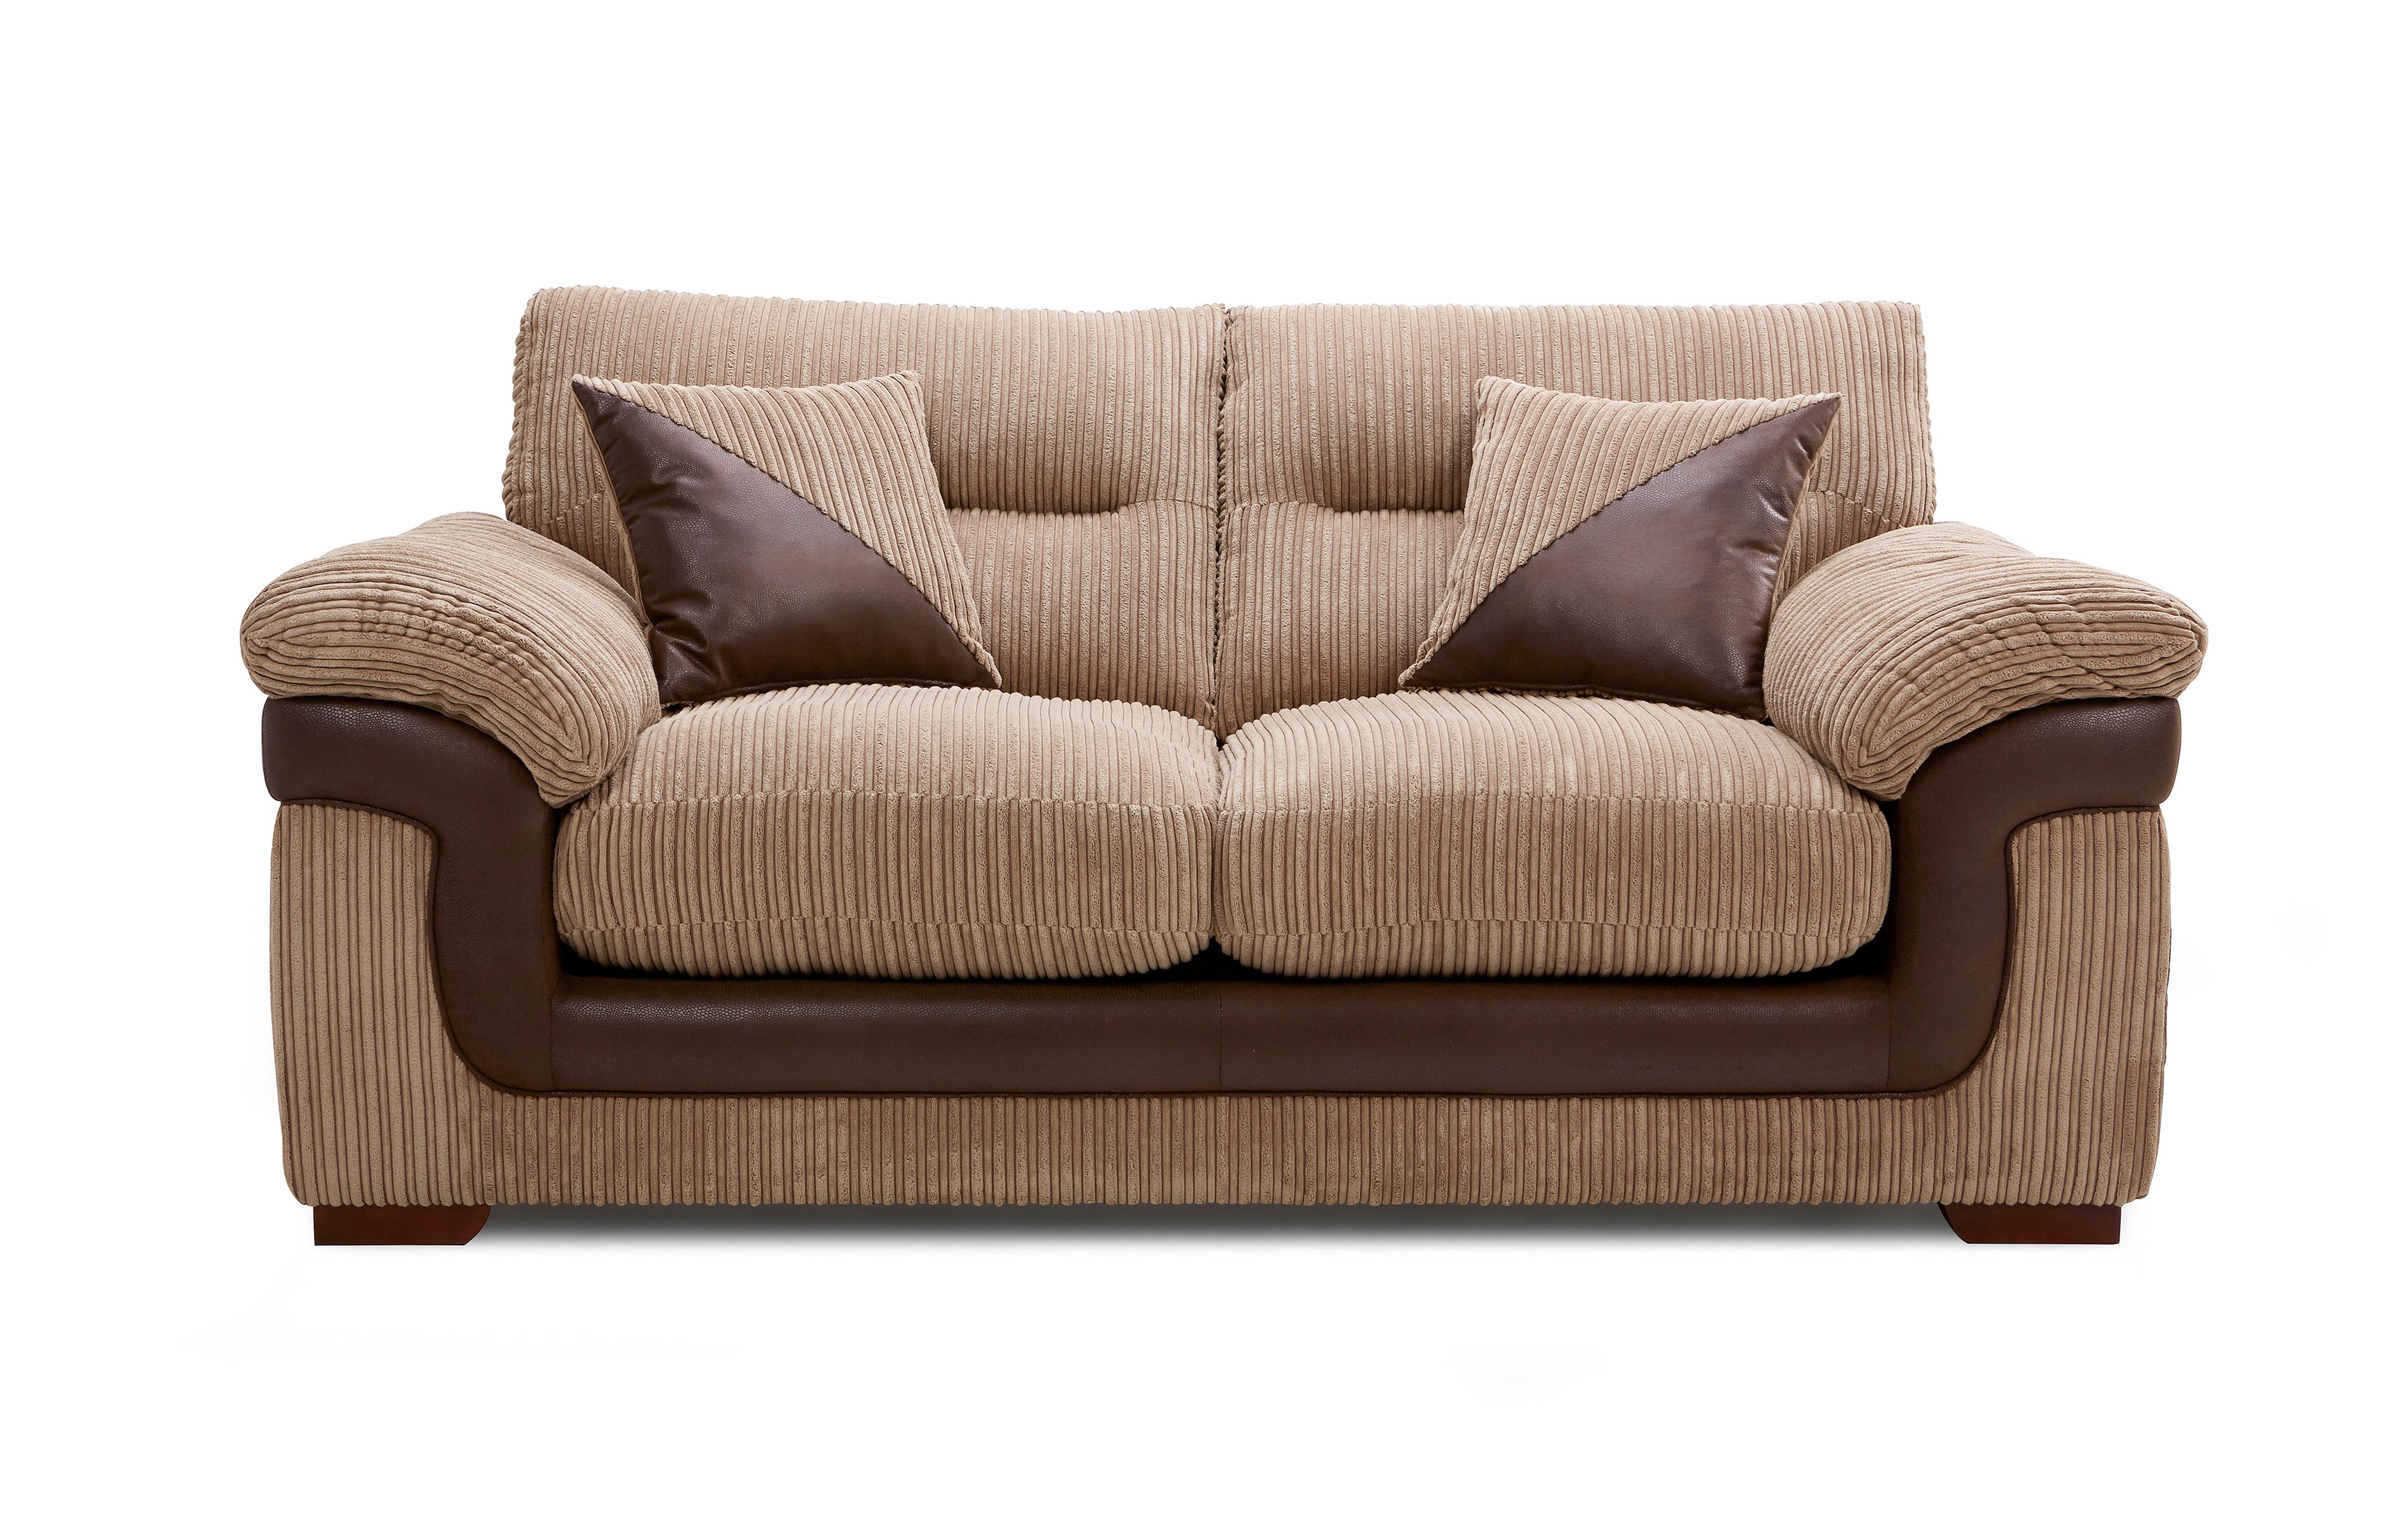 abingdon sofa bed laura ashley